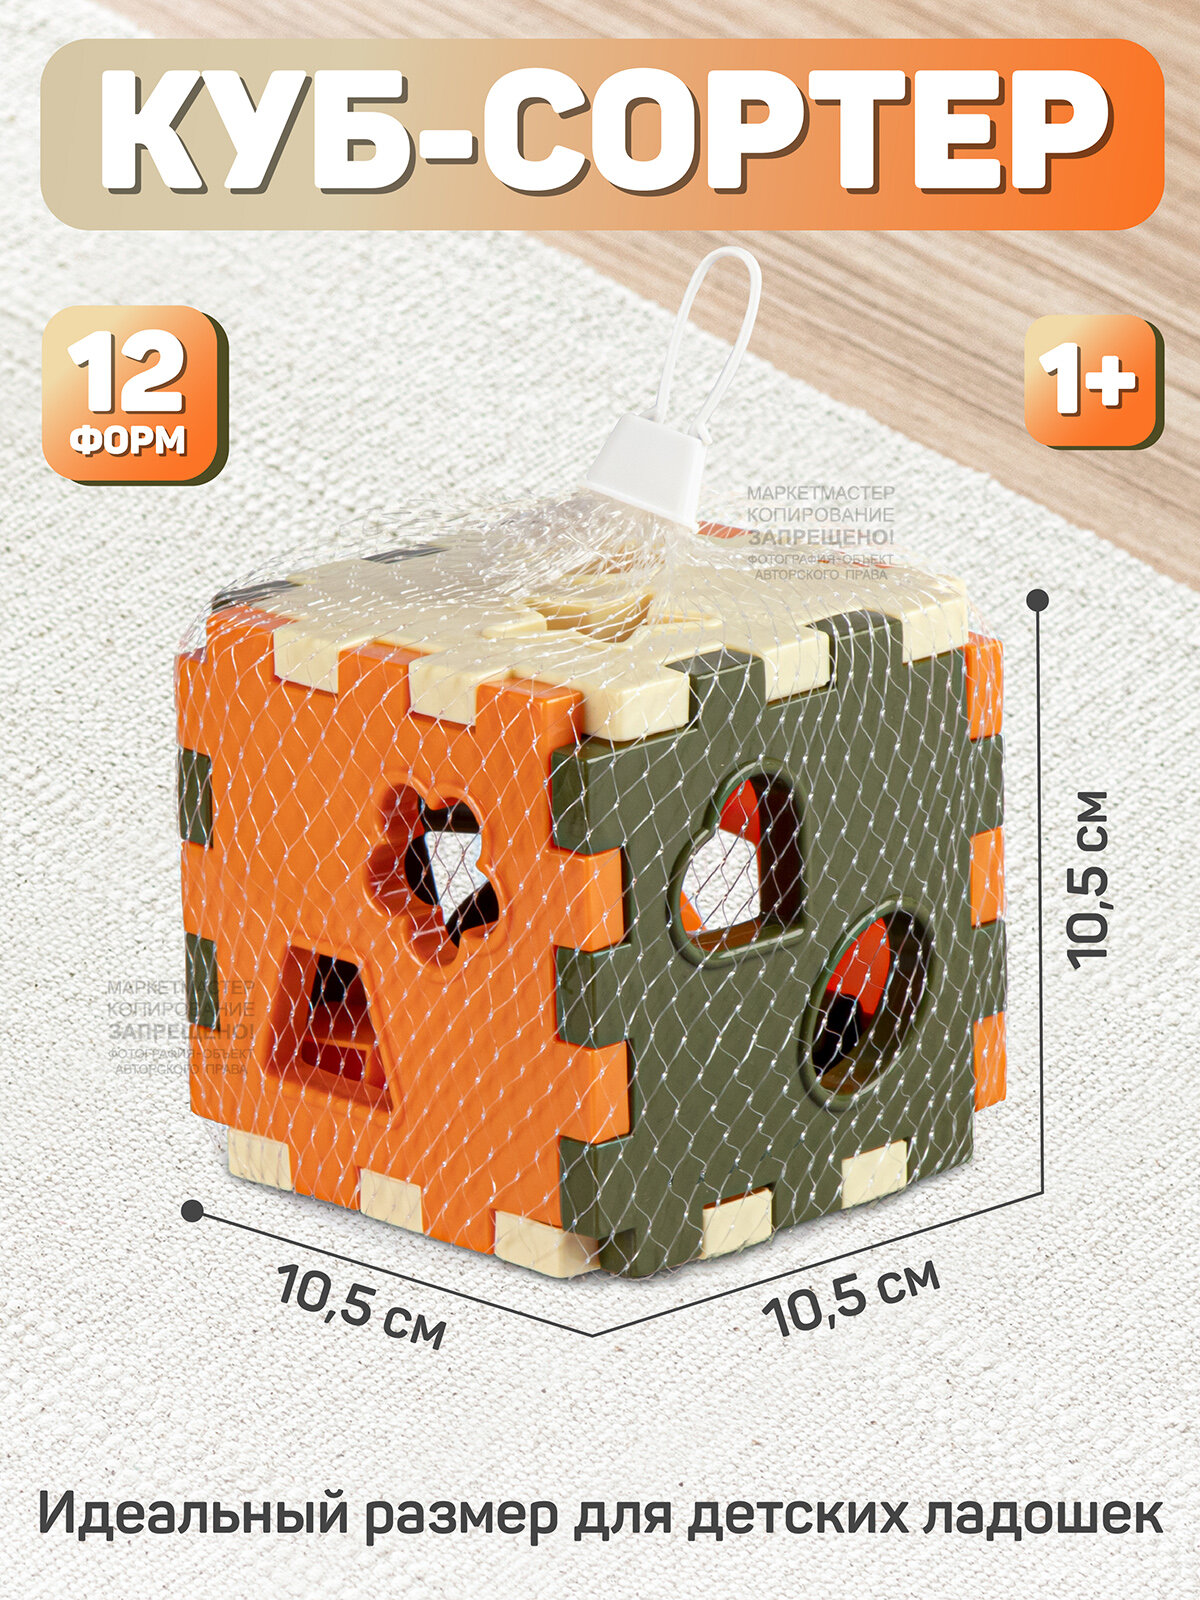 Развивающая игрушка куб, сортер, в сетке, JB5300643